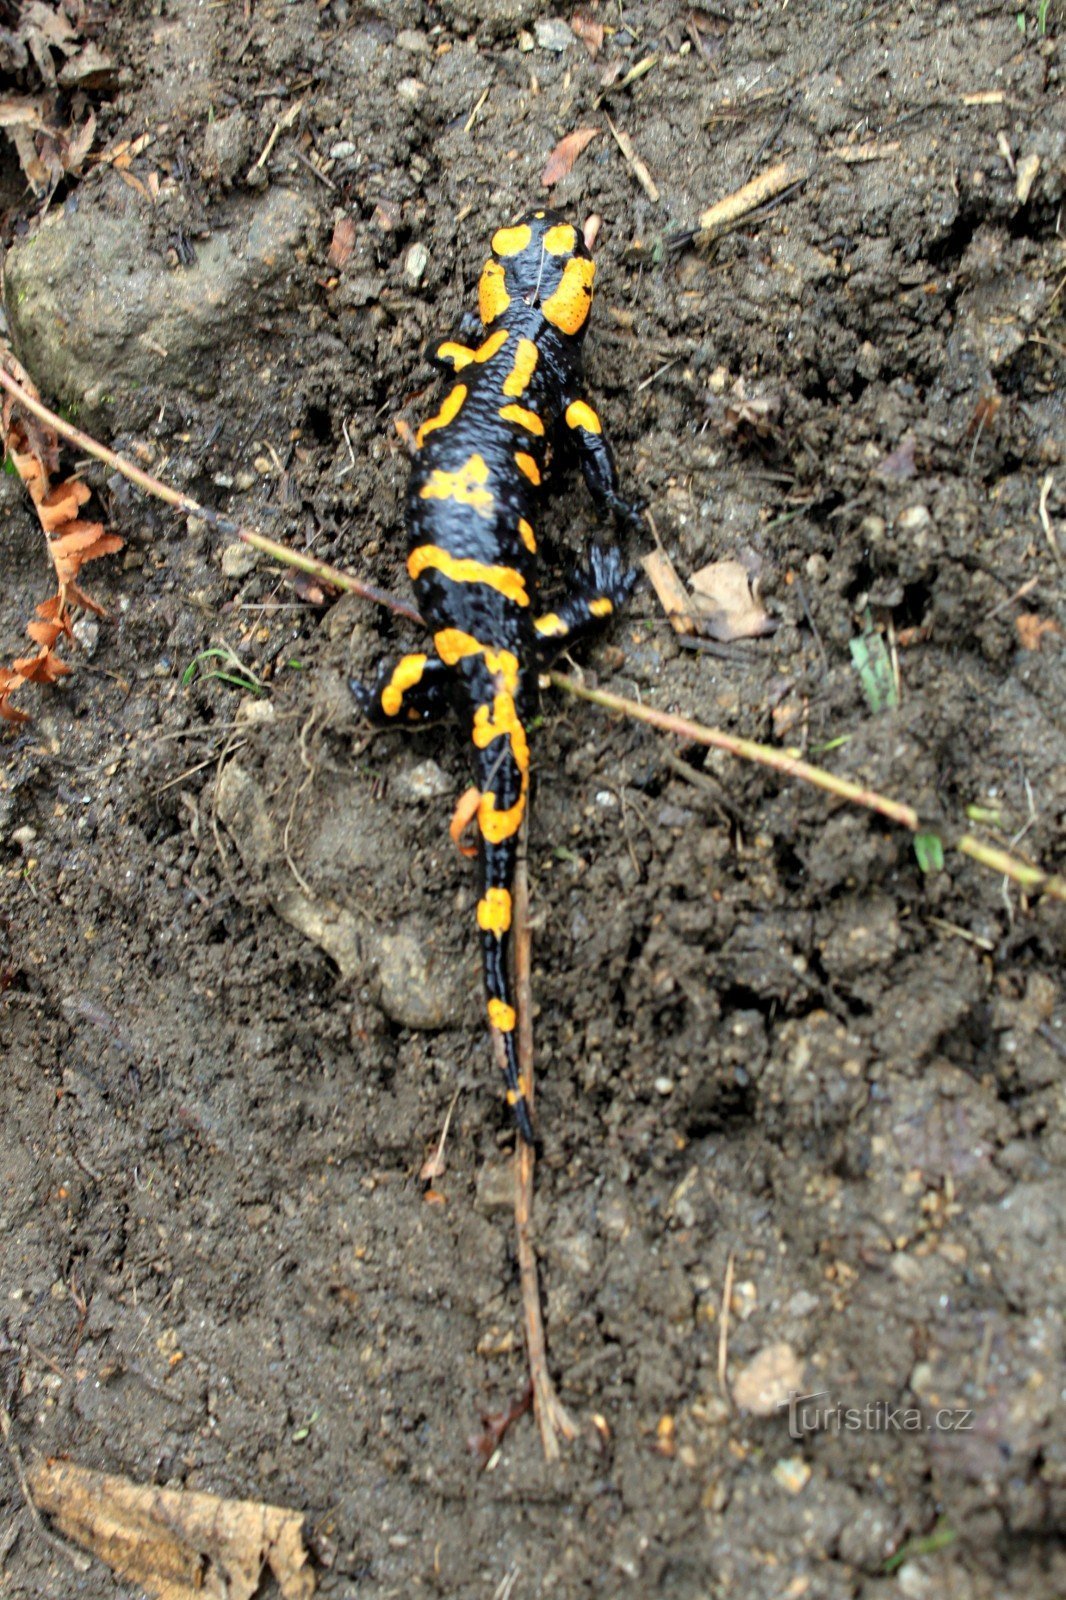 Spotted salamander in Vlčí glokli